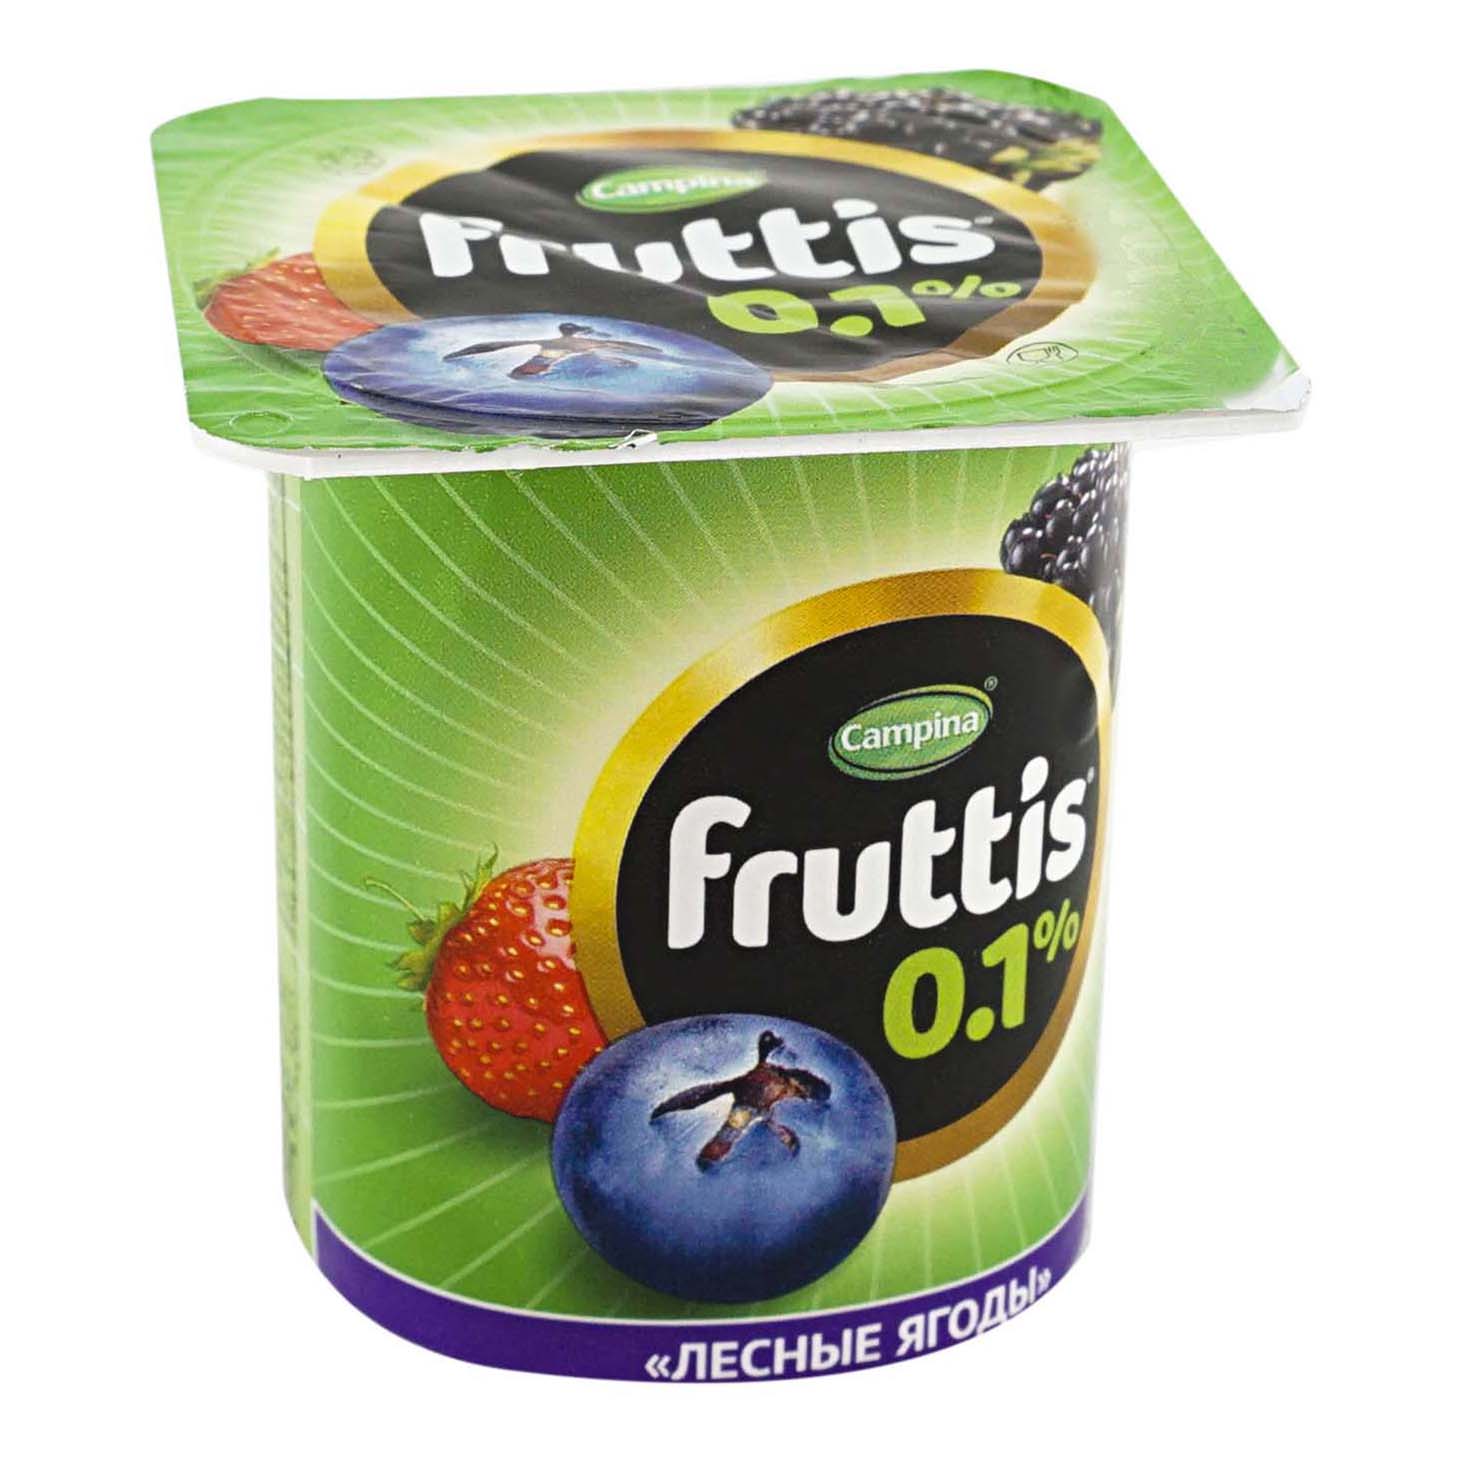 Йогуртный продукт Fruttis легкий ананас дыня лесные ягоды 0,1% 110 г